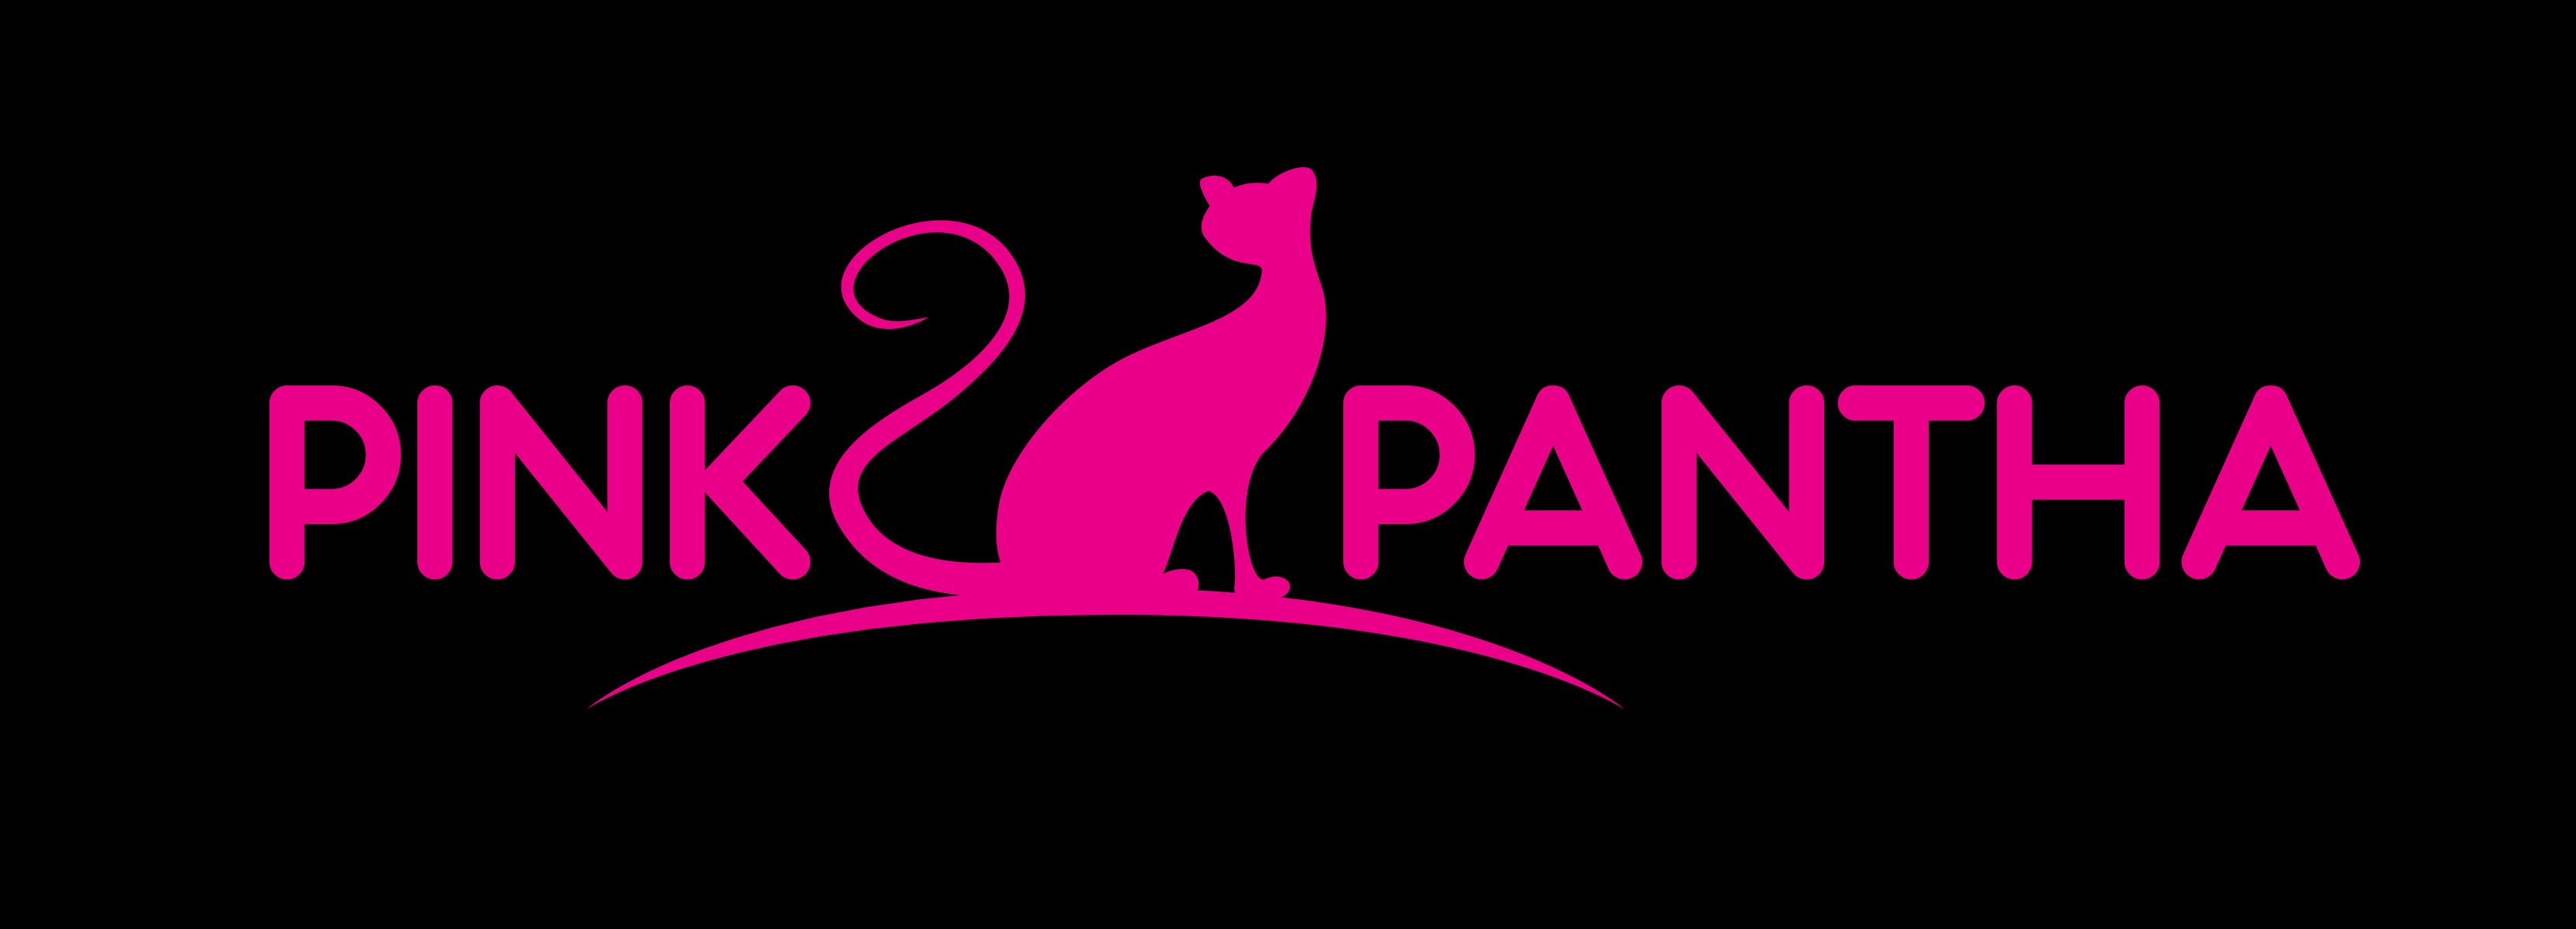 pink pantha logo